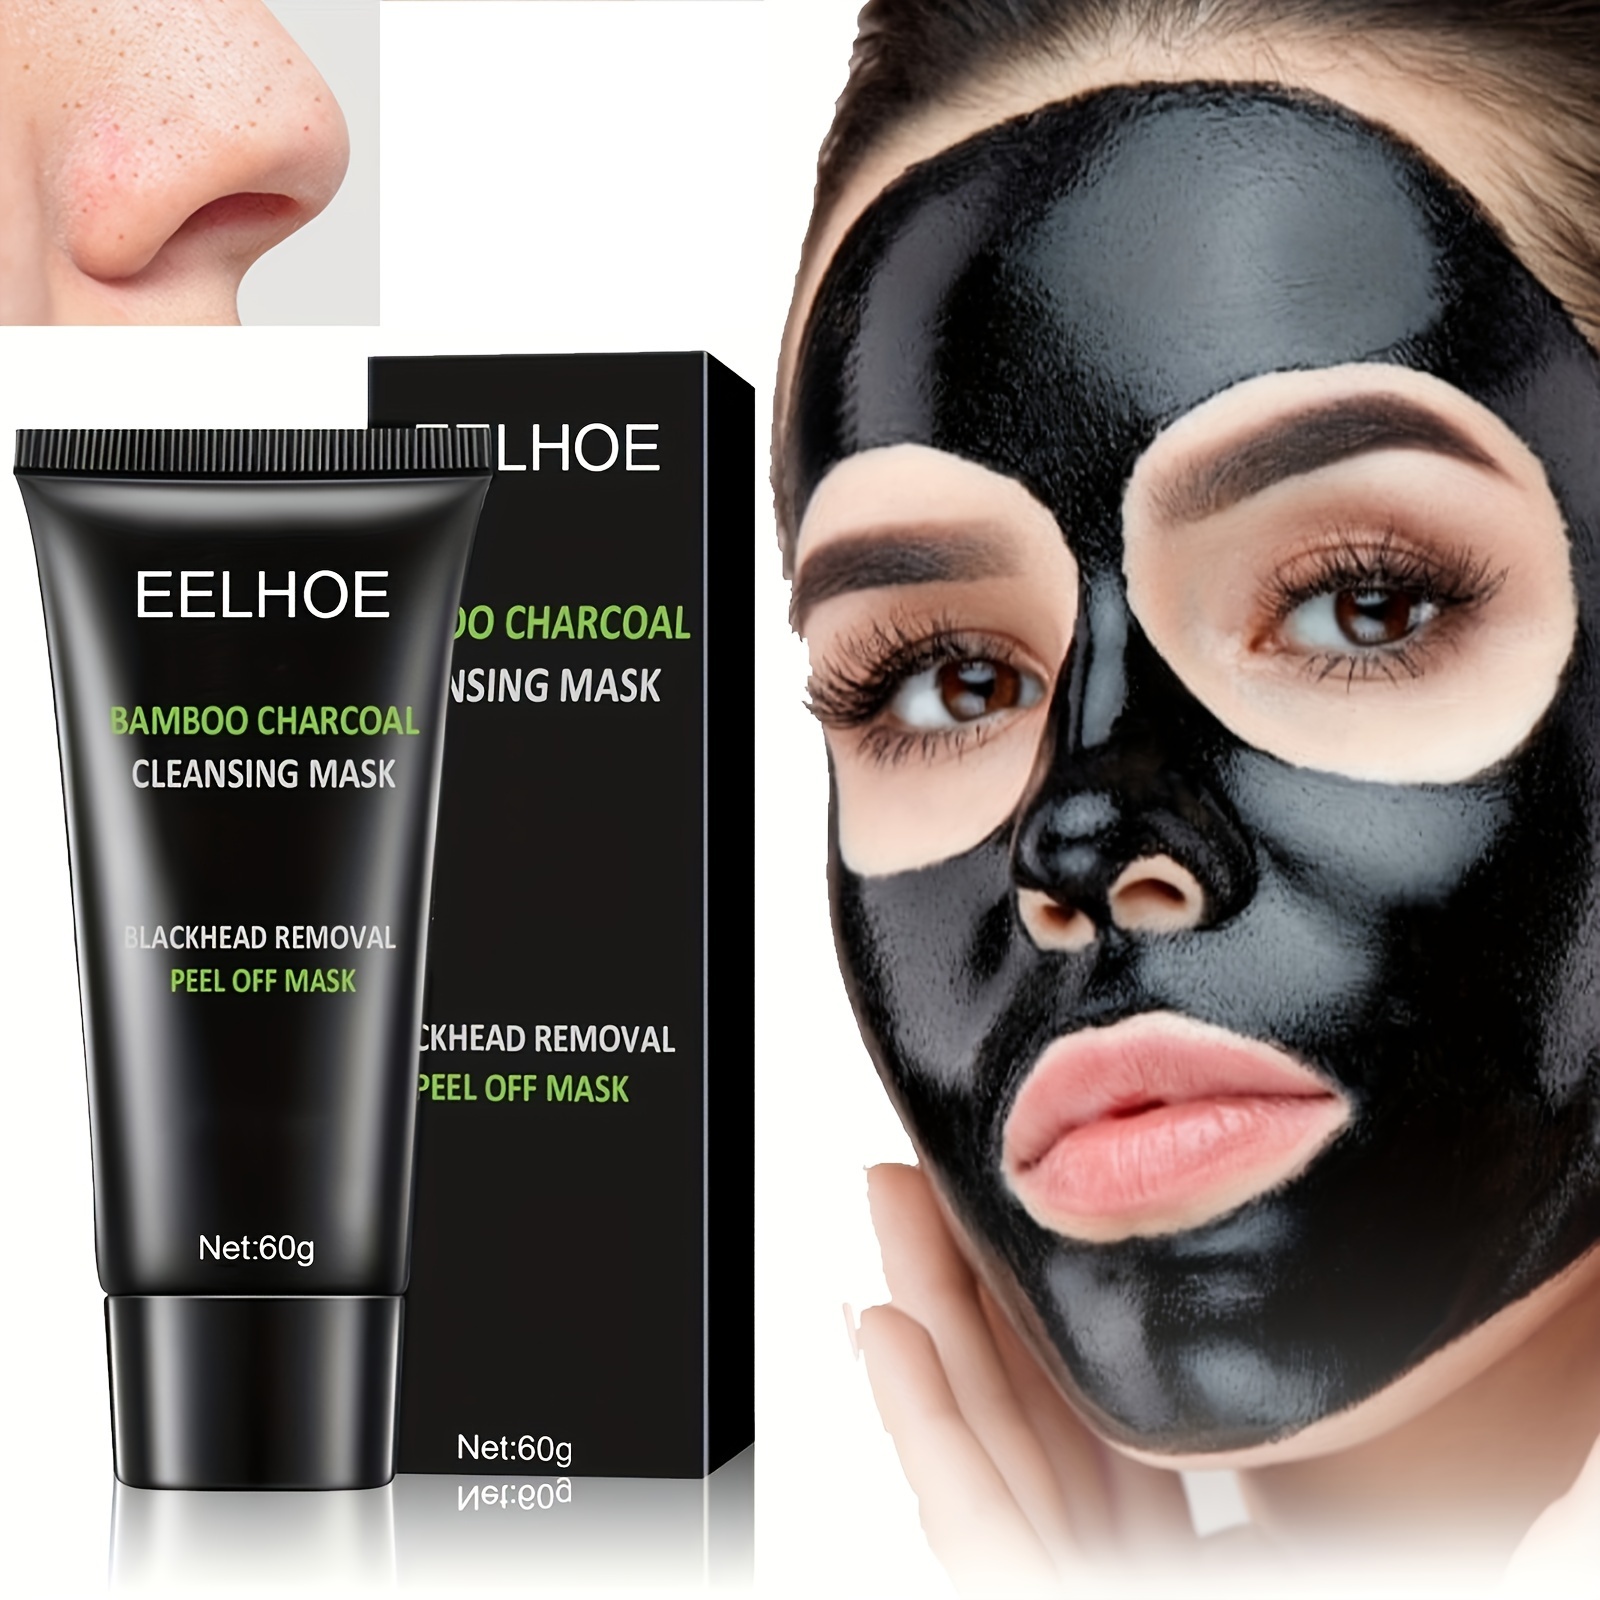 Maschera nera per la cura della pelle, Maschera strappabile purificante,  Maschera viso al carbone per una pulizia profonda e rigenera la pelle